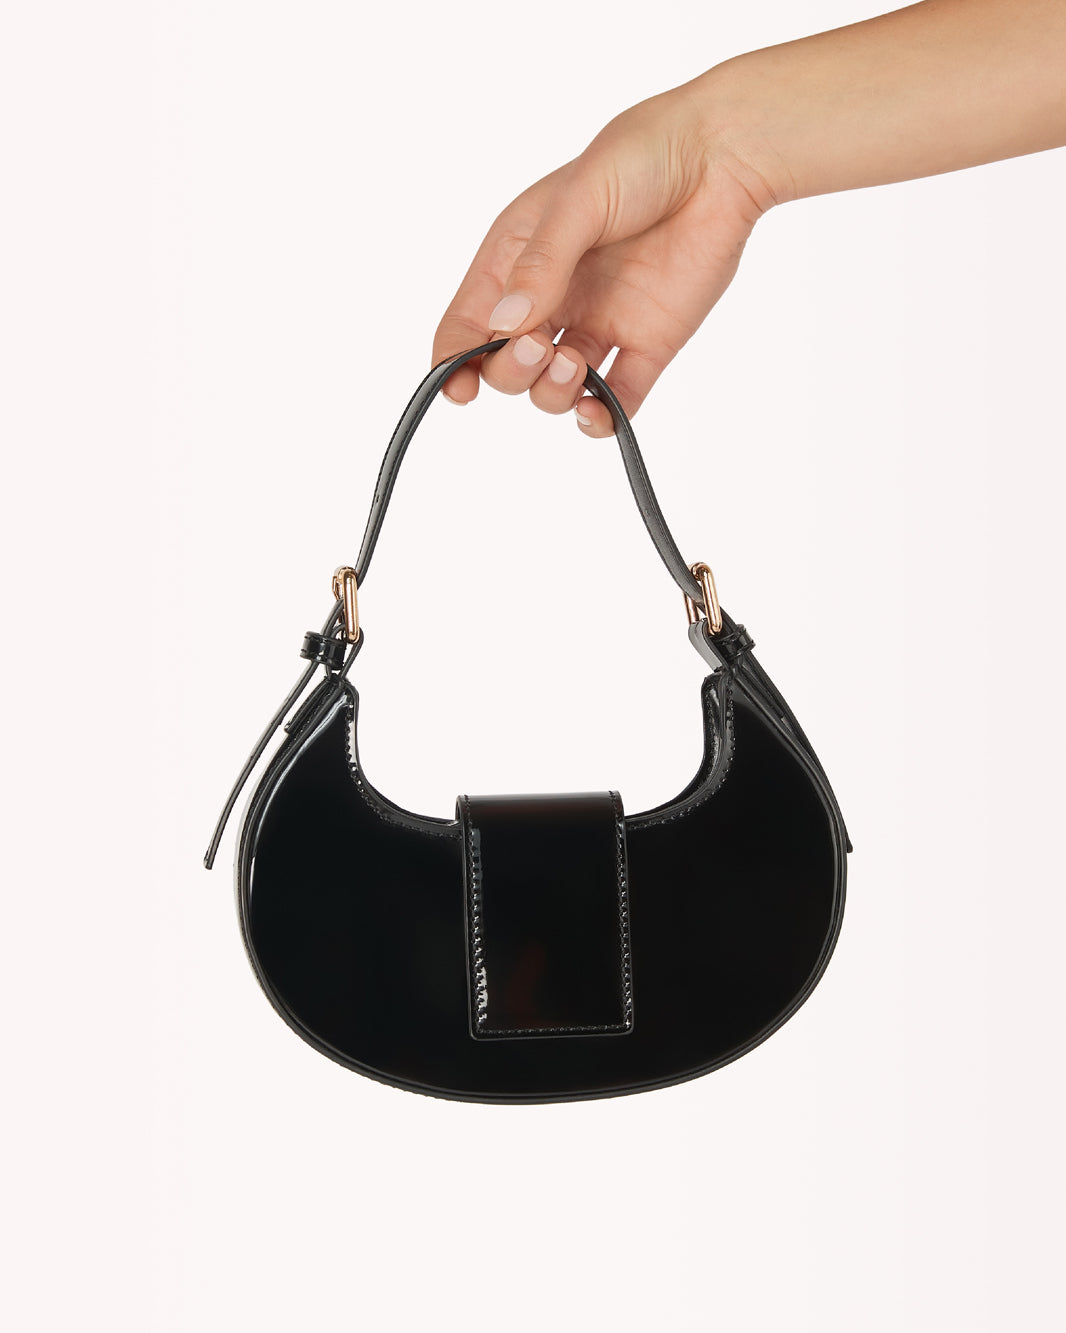 ATTICA CROSS BODY BAG - BLACK PATENT-Handbags-Billini-O/S-Billini